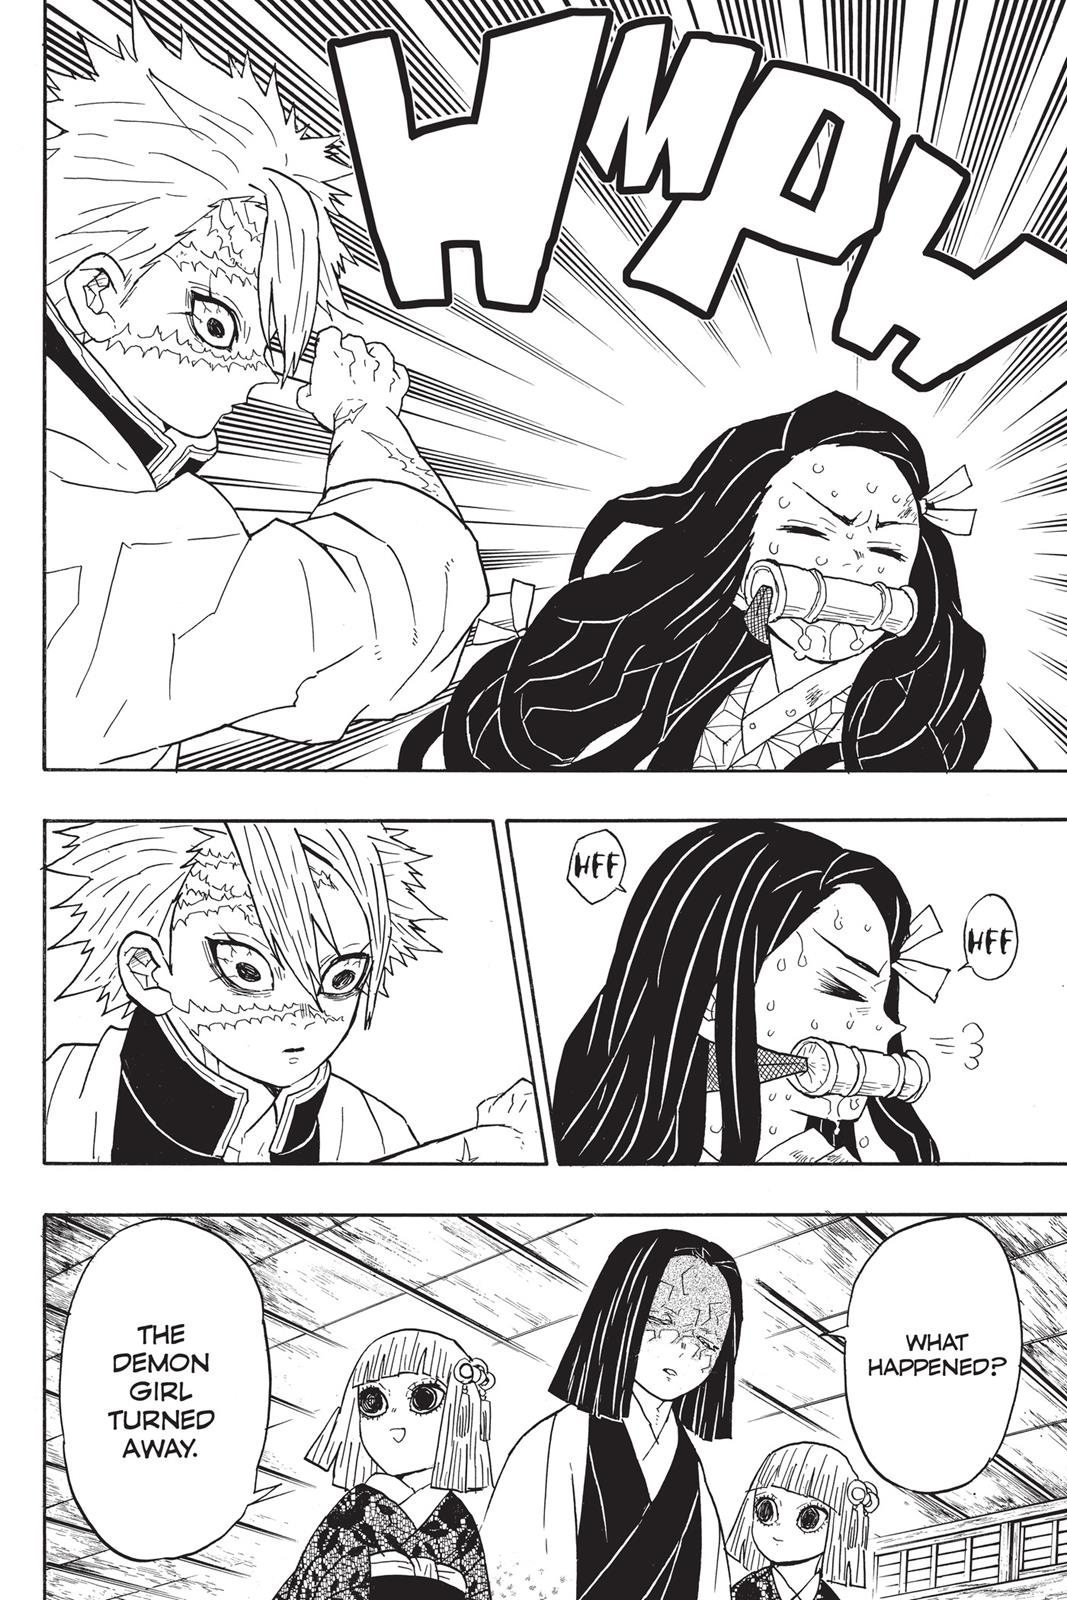 Demon Slayer Manga Manga Chapter - 47 - image 9